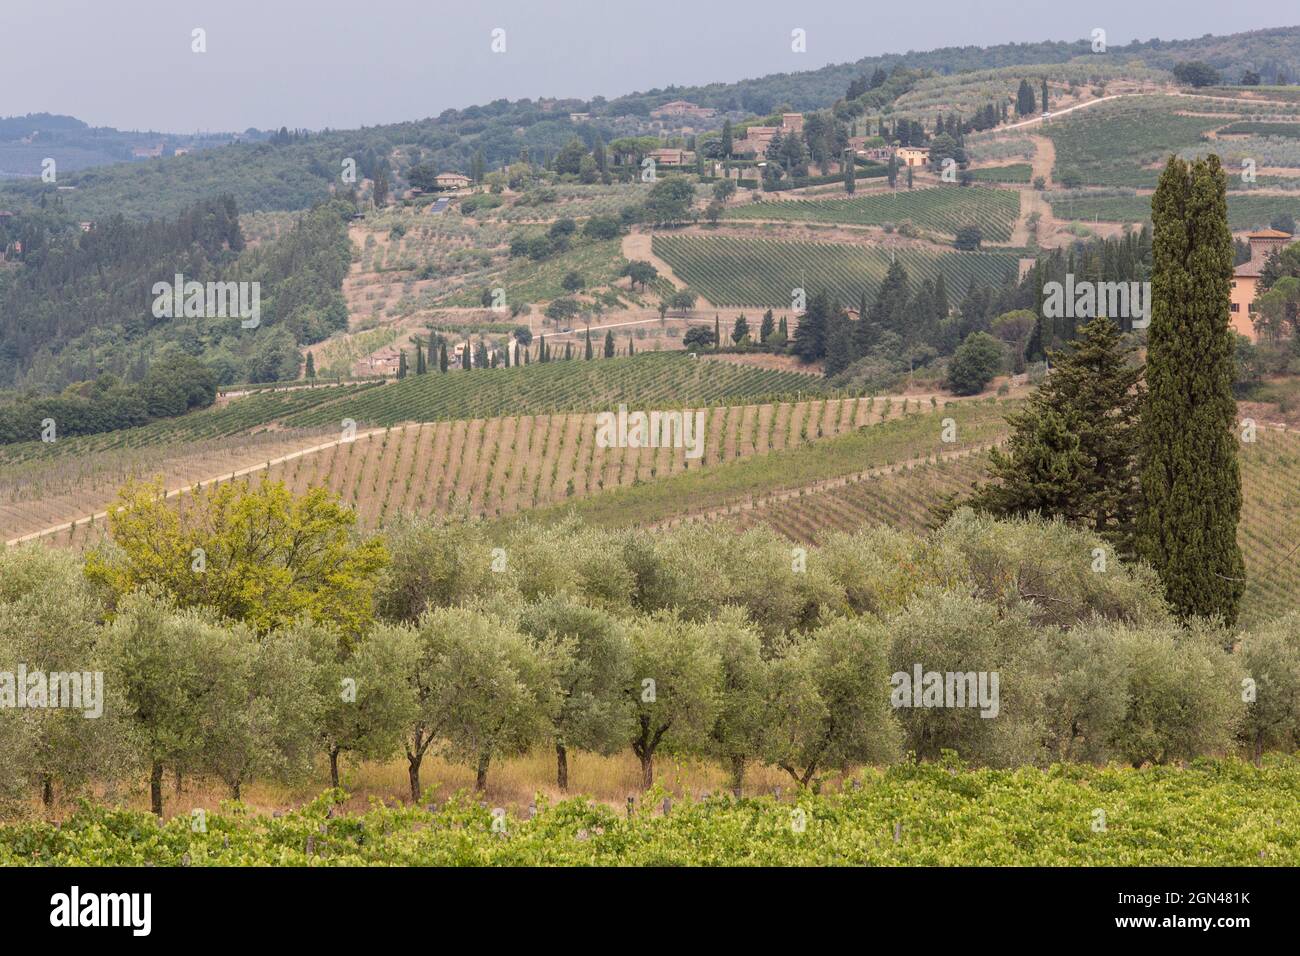 LANDSCAPES OF THE CHIANTI REGION,TUSCANY,ITALY Stock Photo